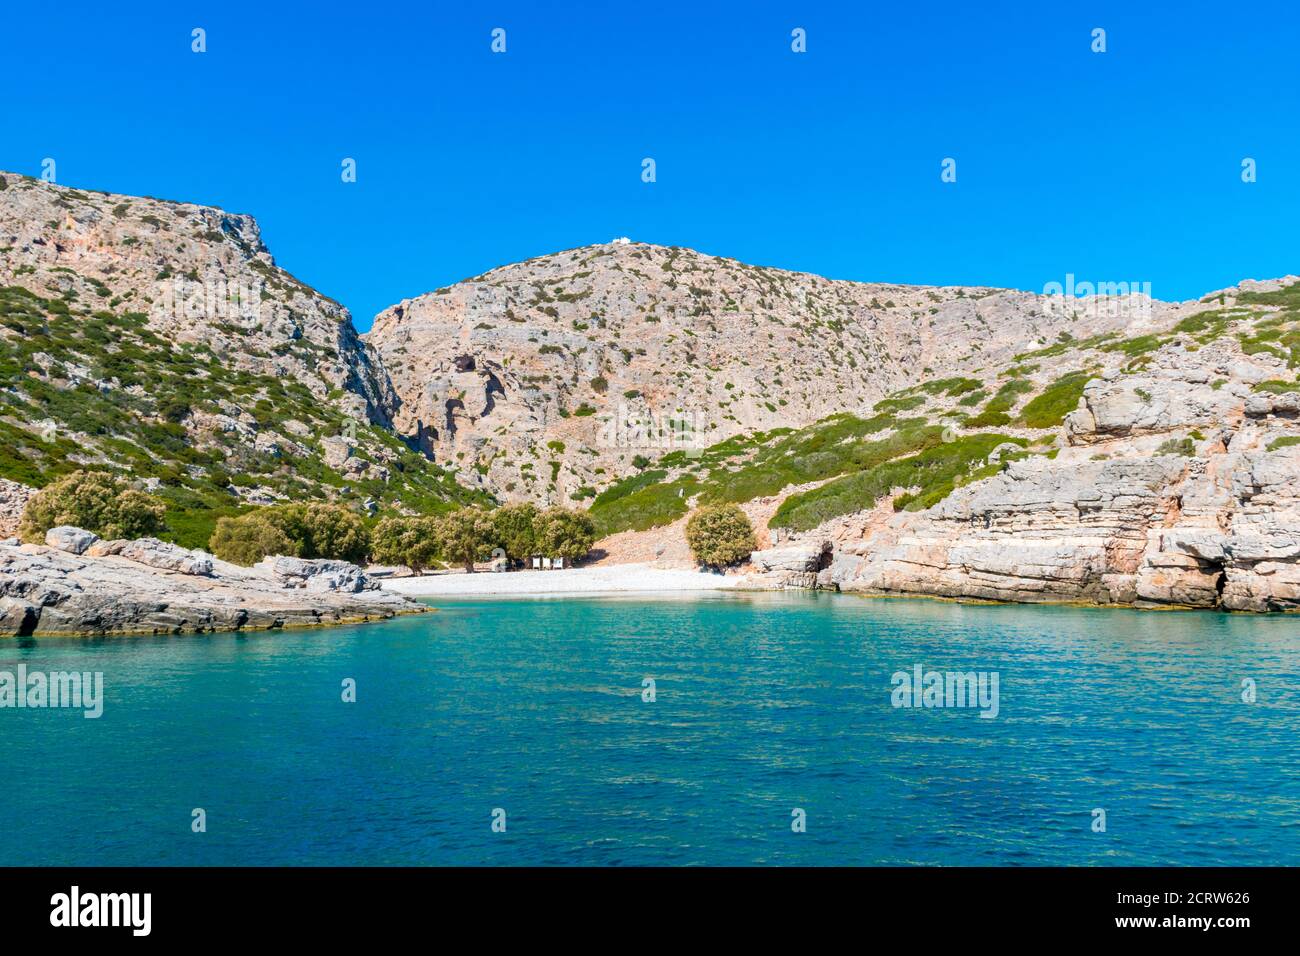 Palatia, plage Turquoise sur l'île de Saria avec chapelle blanche au-dessus, île de Karpathos, Grèce Banque D'Images